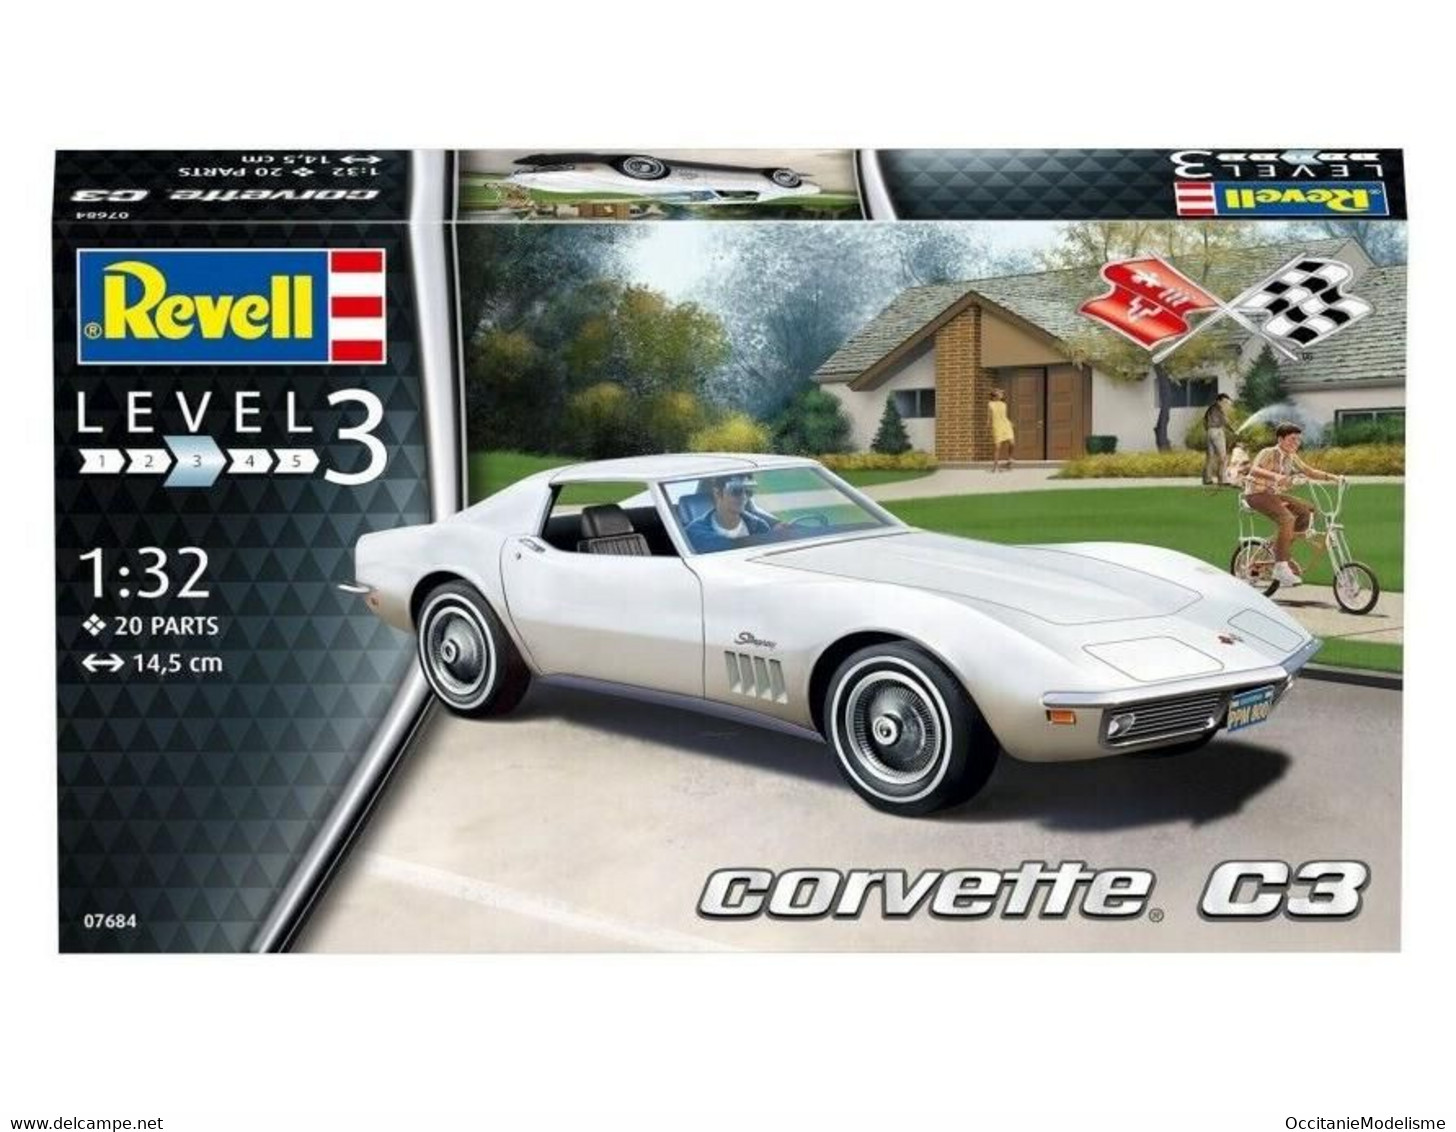 Revell - CHEVROLET CORVETTE C3 Maquette Kit Plastique 07684 Neuf NBO 1/32 - Voitures